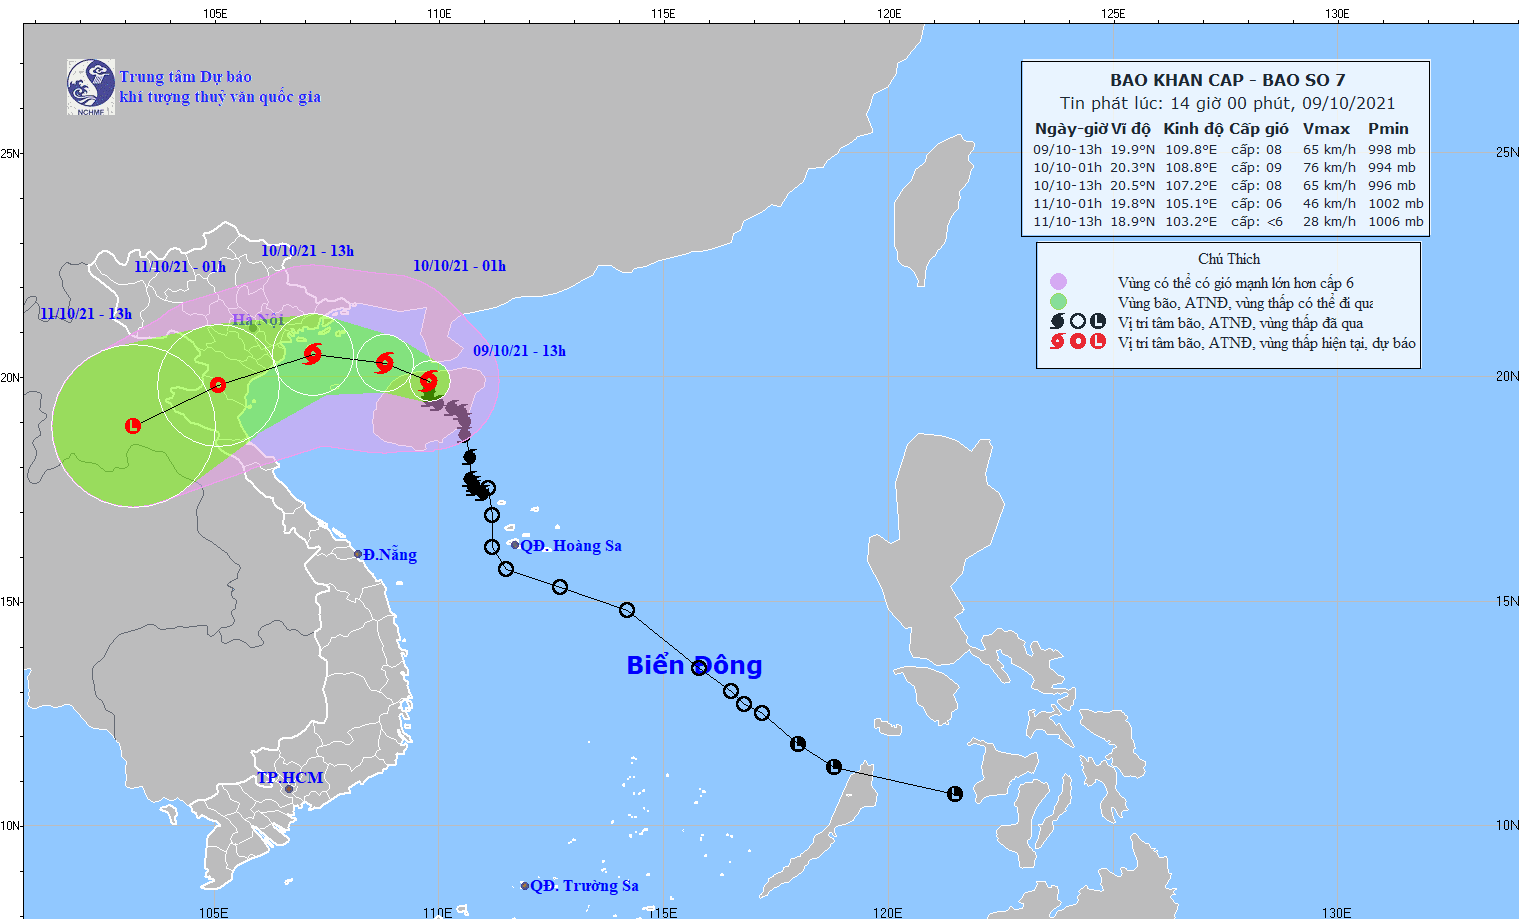 Ứng phó bão số 7, sẵn sàng sơ tán hơn 70.000 người dân đến nơi an toàn, Quảng Ninh cấm biển từ trưa nay